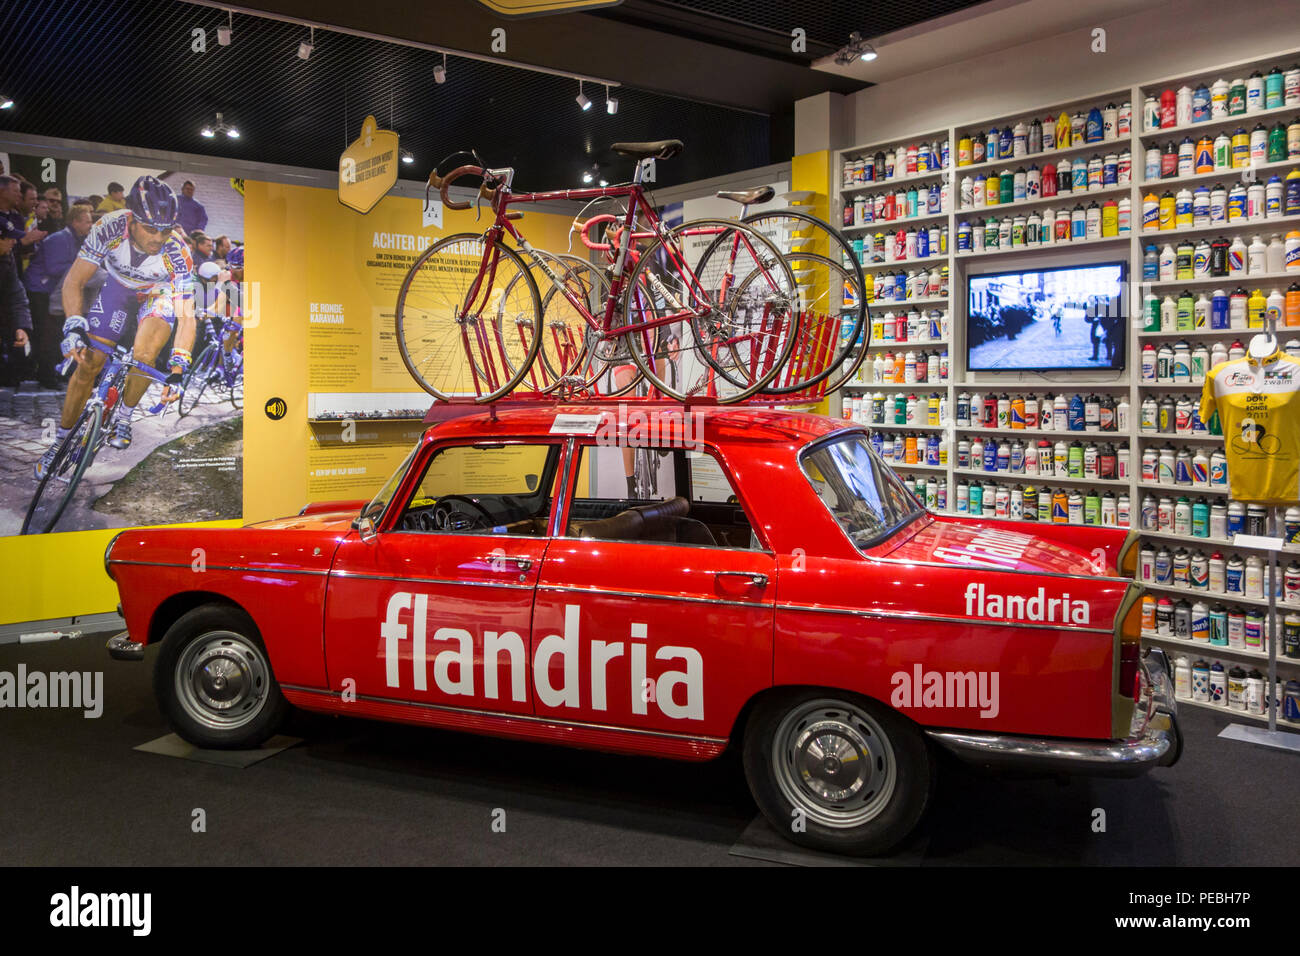 Dans la voiture de l'équipe Flandria Centrum Ronde van Vlaanderen / Tour des Flandres Centre, musée dédié à la course à vélo route Flandre, Oudenaarde, Belgique Banque D'Images